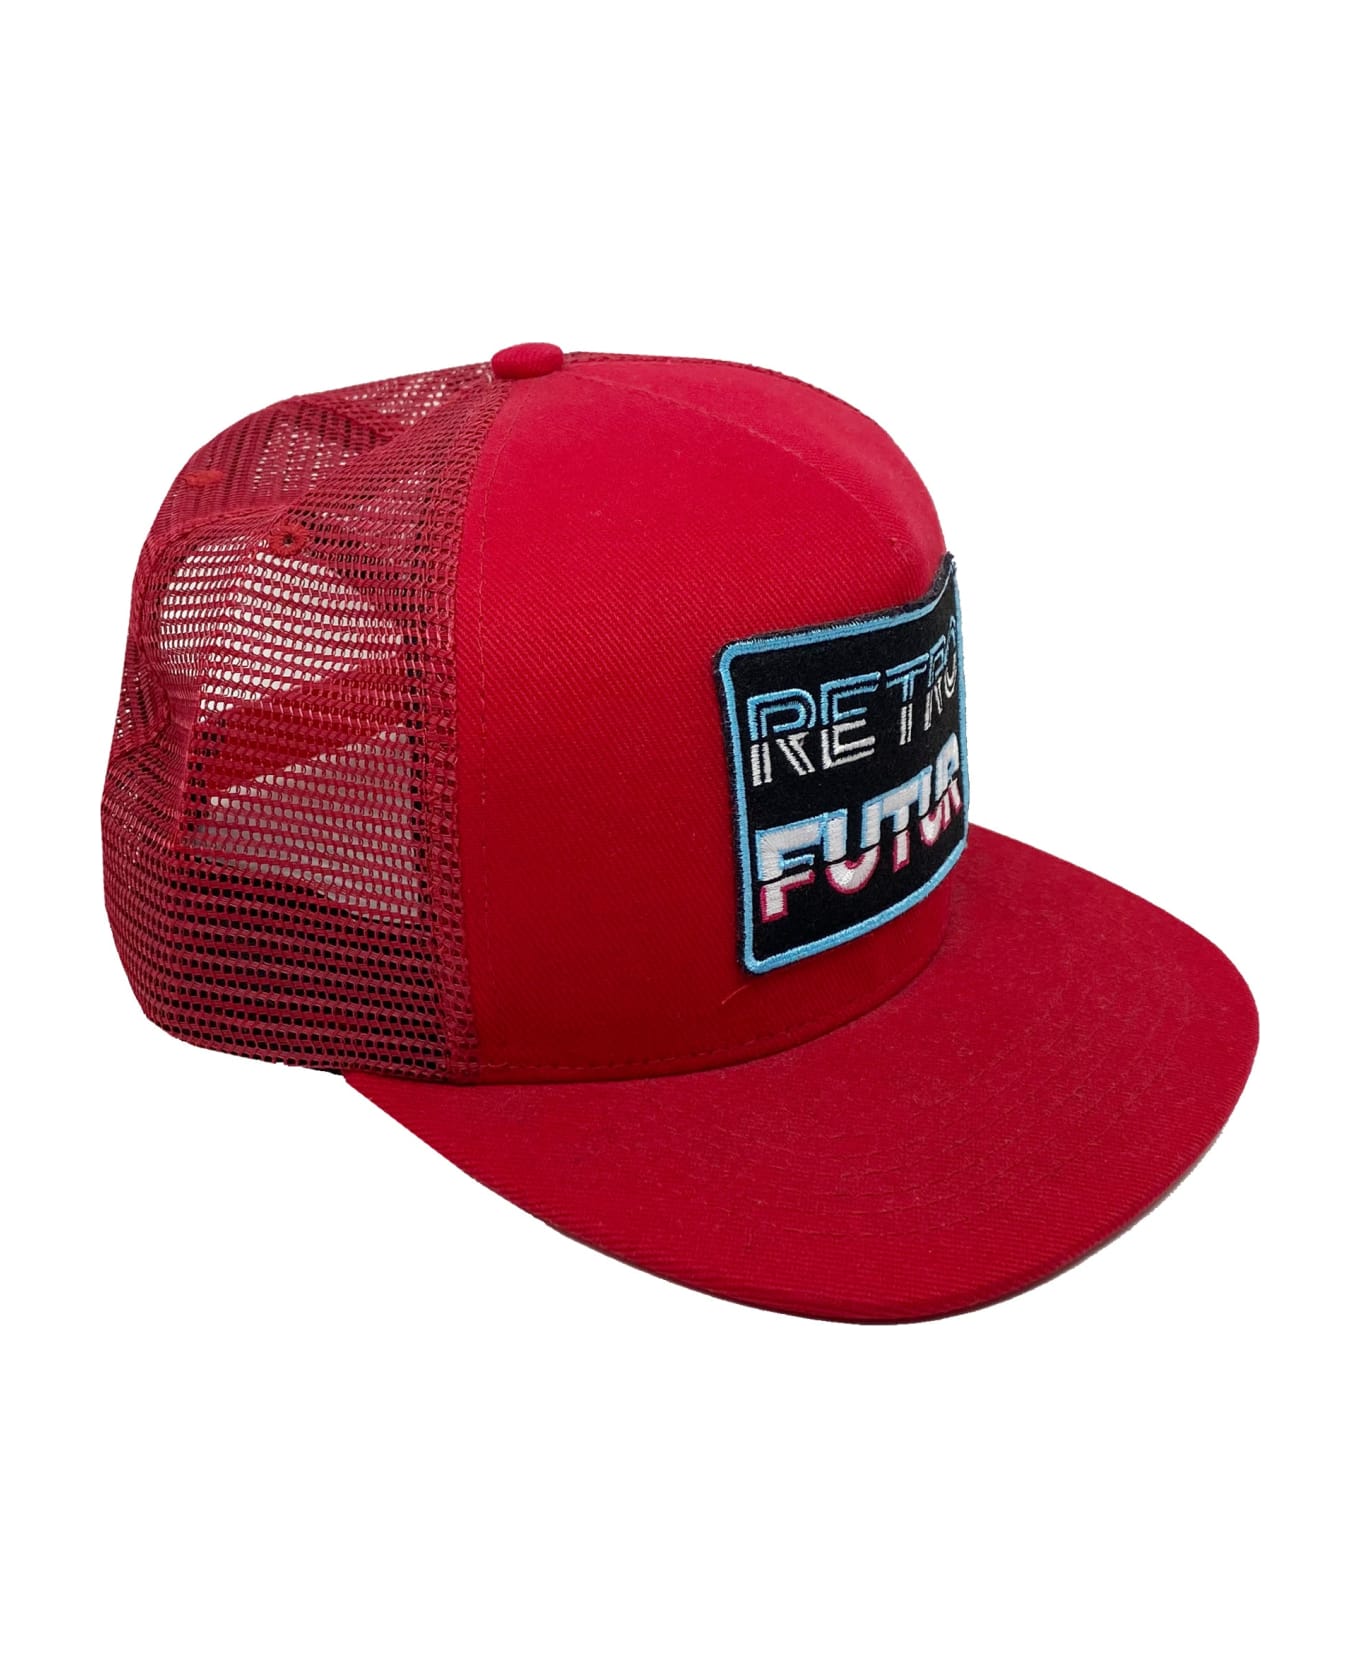 Saint Laurent Retro Futur Cap - Red 帽子